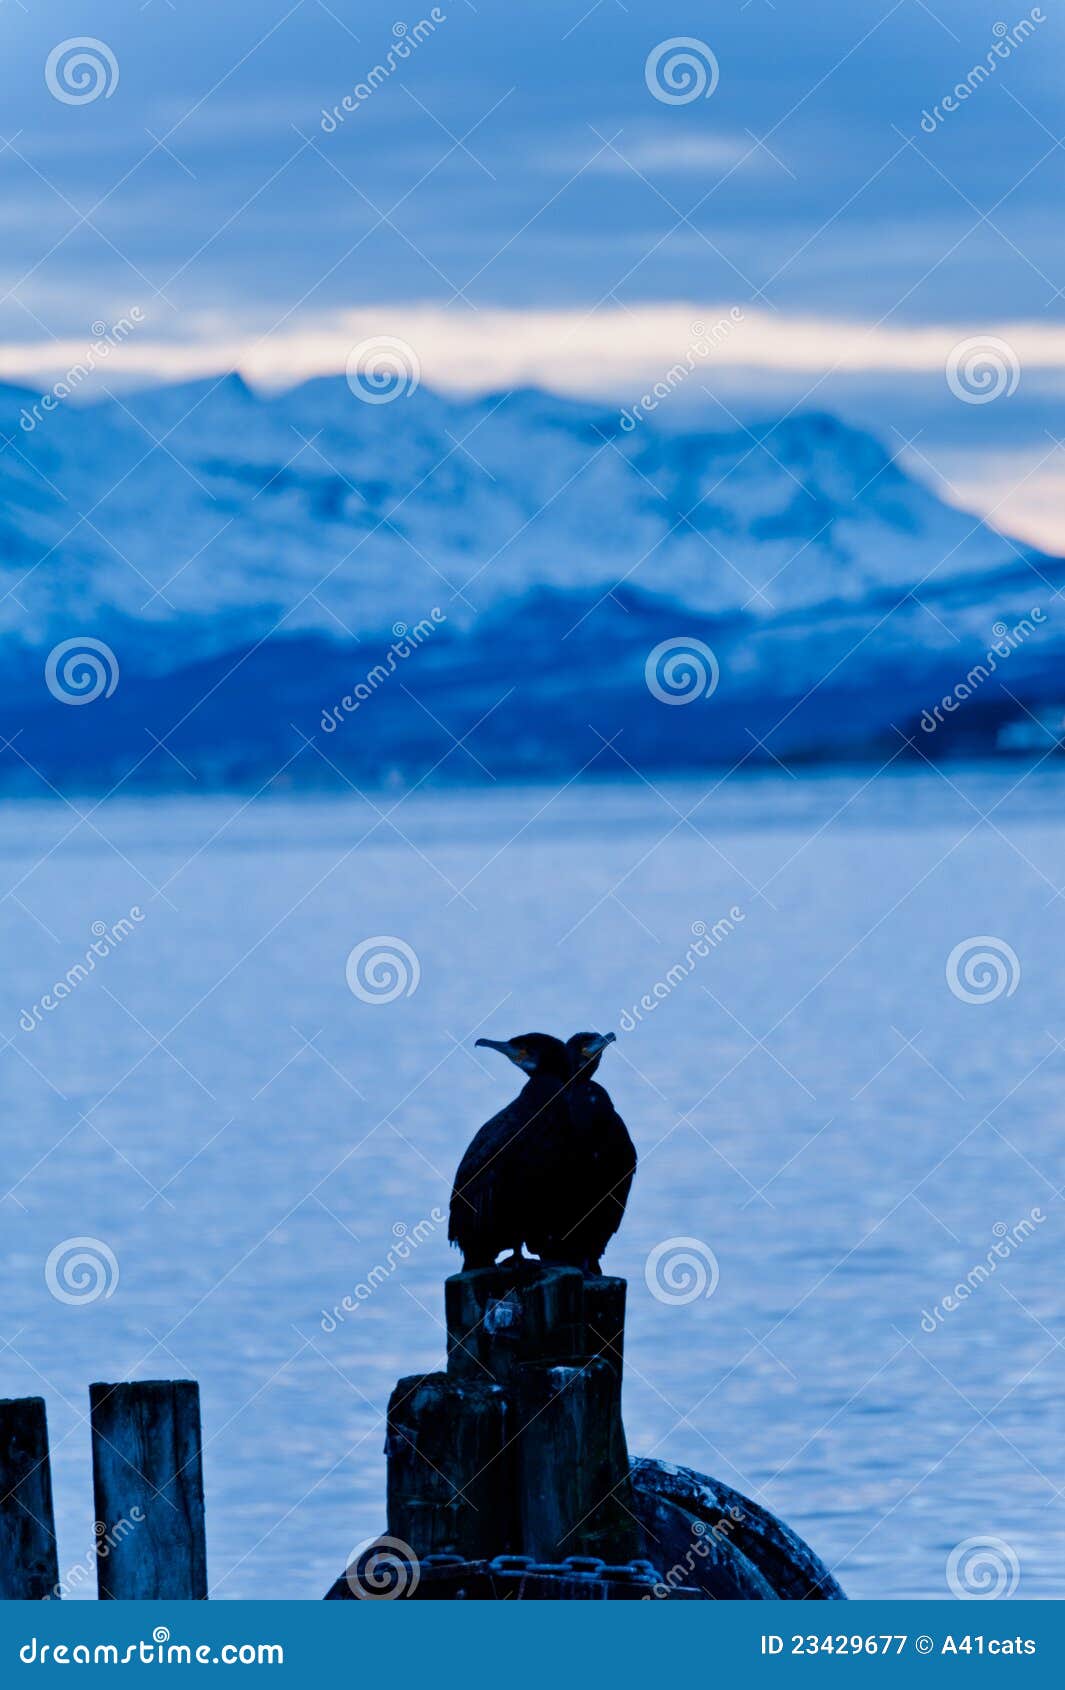 cormoran bird sits on a pier in winter